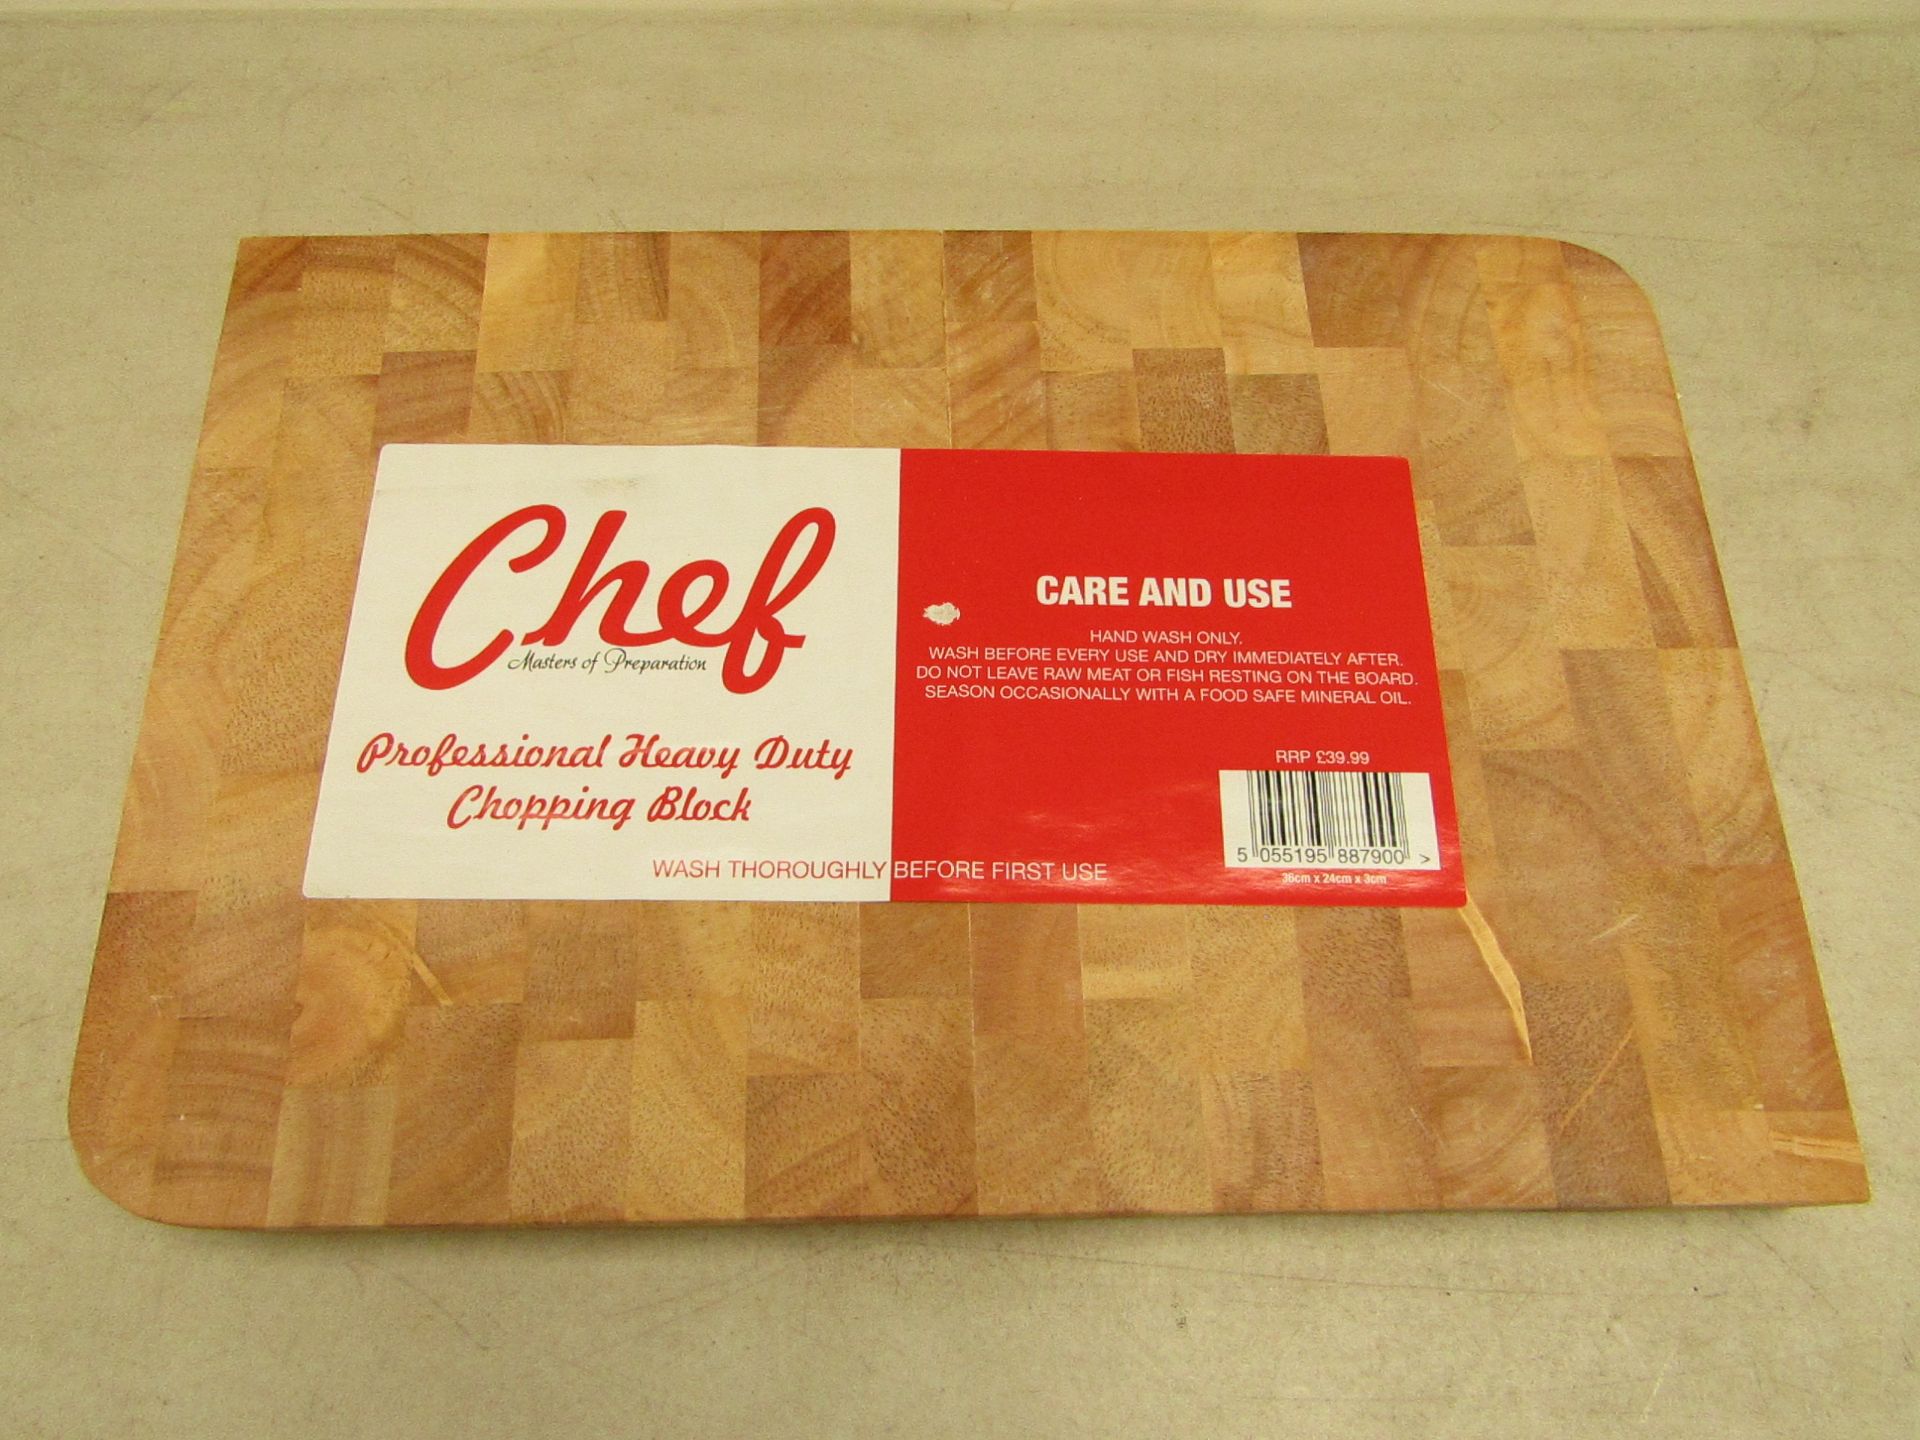 Chef professional heavy duty chopping board, new.